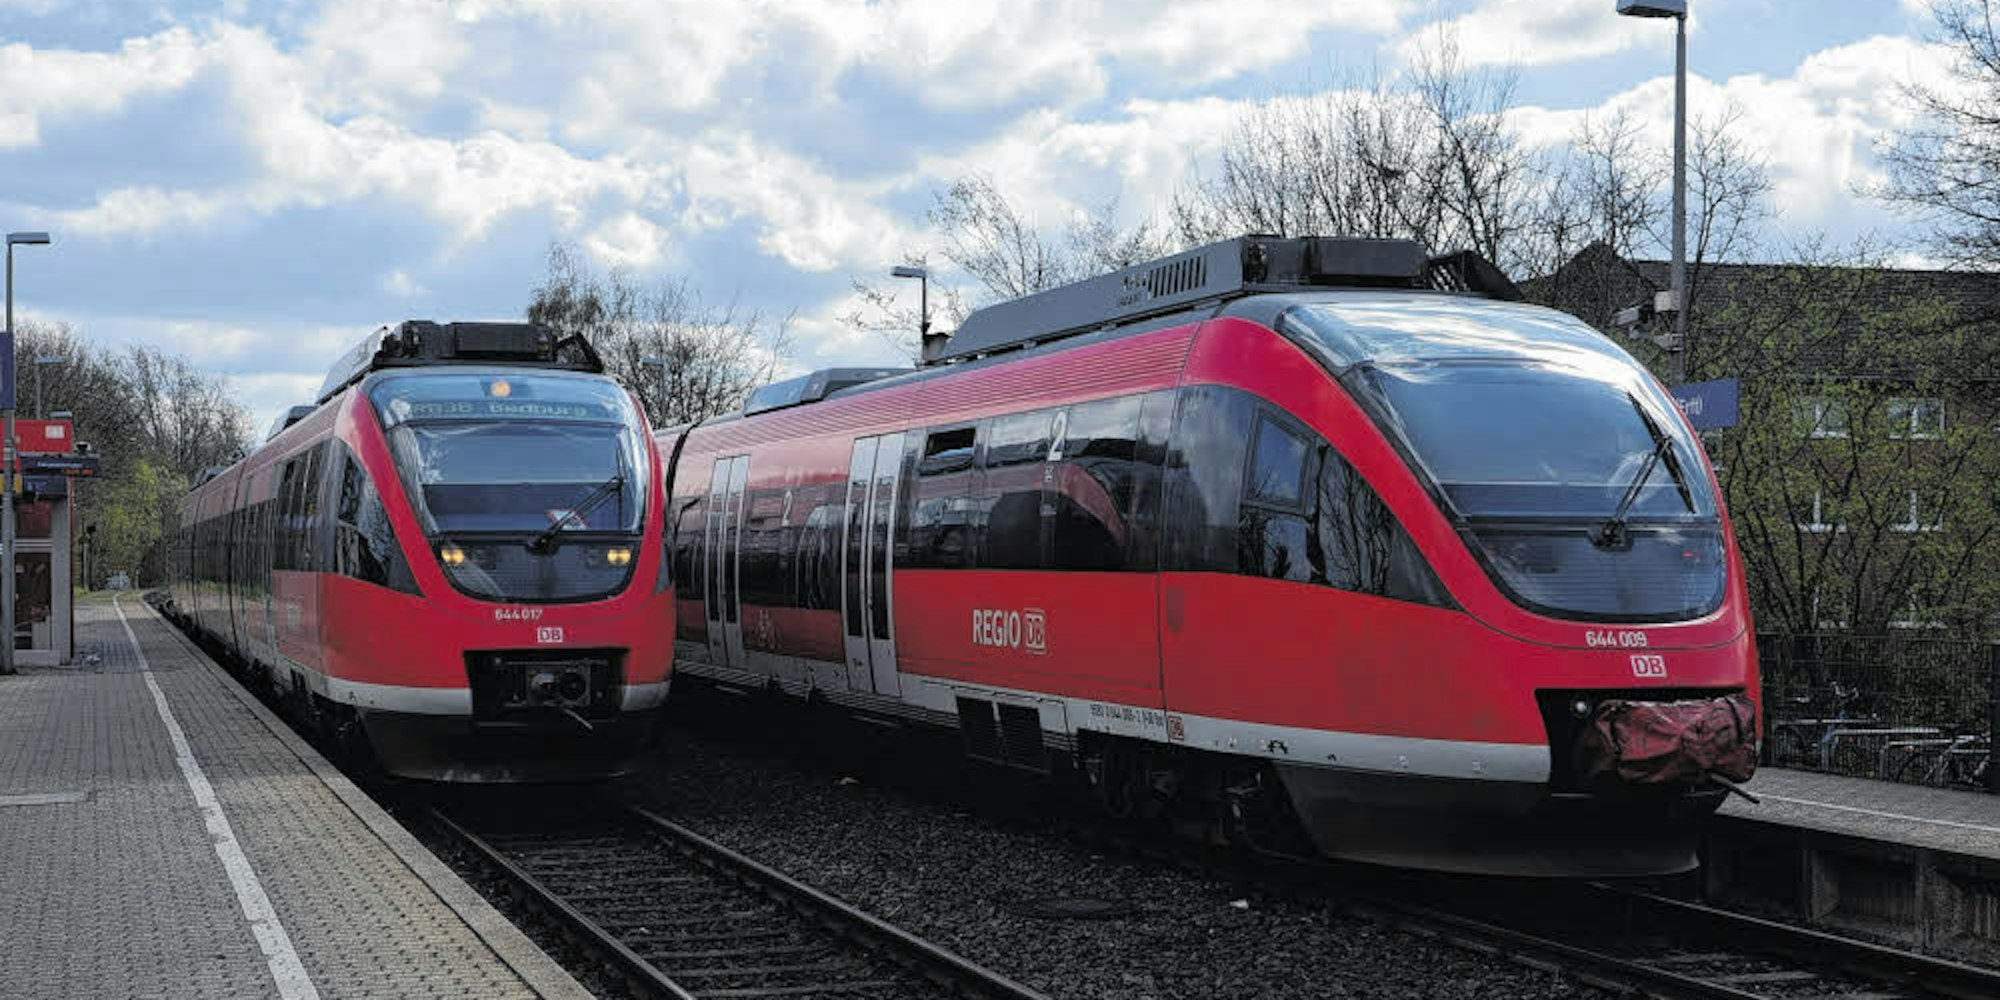 Die Strecke der Regionalbahn 38 von Horrem über Bergheim nach Bedburg soll zur S-Bahn ausgebaut werden. In Bezug auf die Planungen haben nun auch die Bürger Gelegenheit, bis zum 19. Juli ihre Anregungen einzubringen.